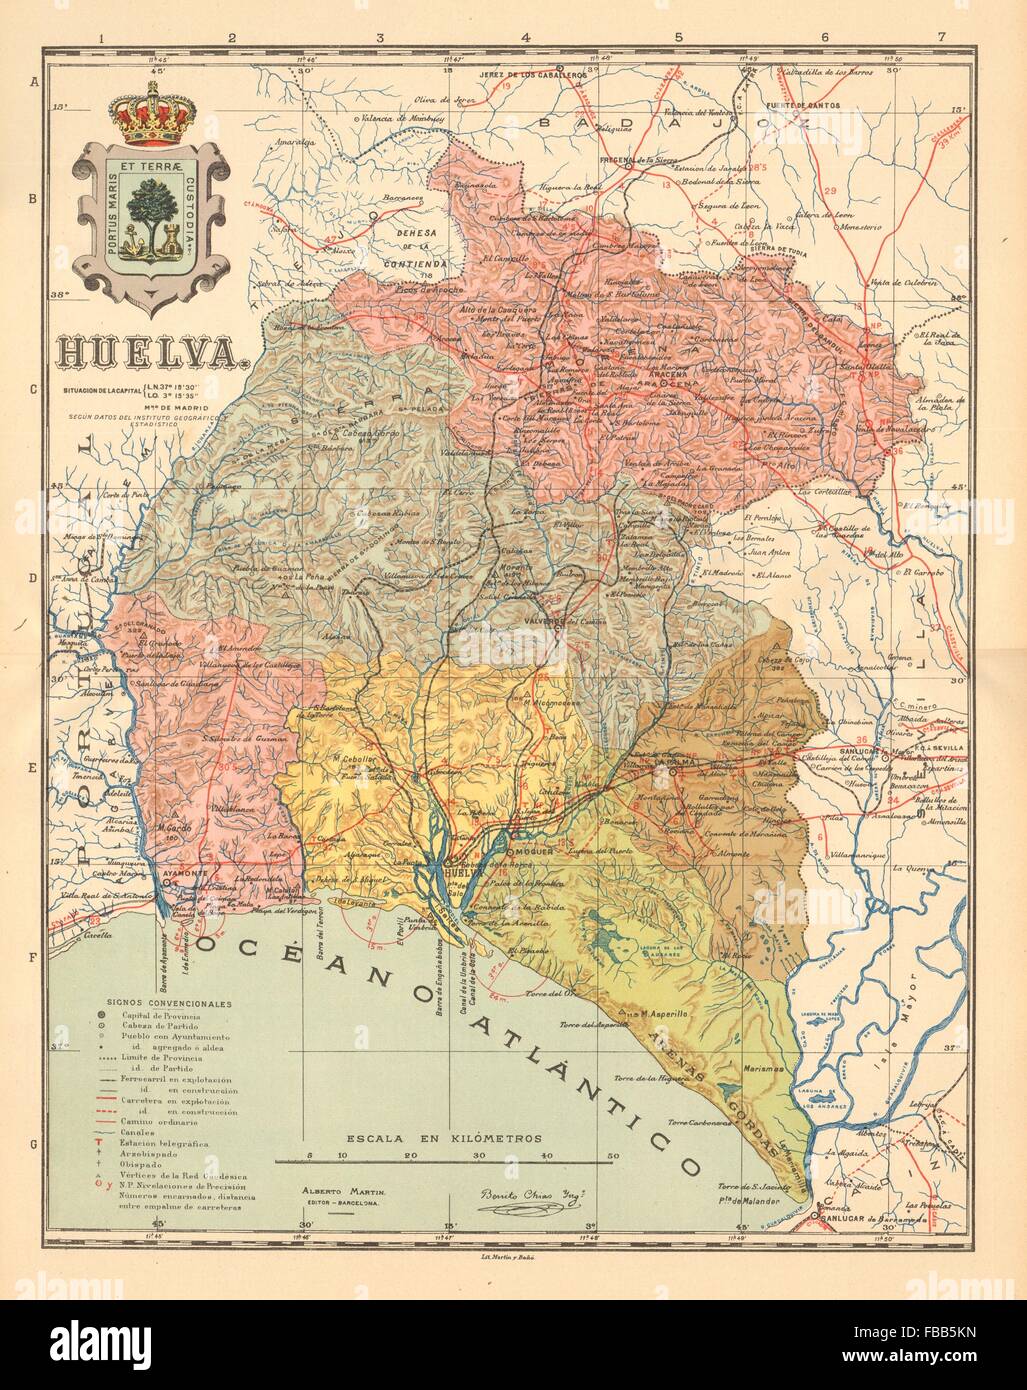 HUELVA. Andalucia. Mapa antiguo de la provincia. ALBERTO MARTIN, c1911 Stock Photo